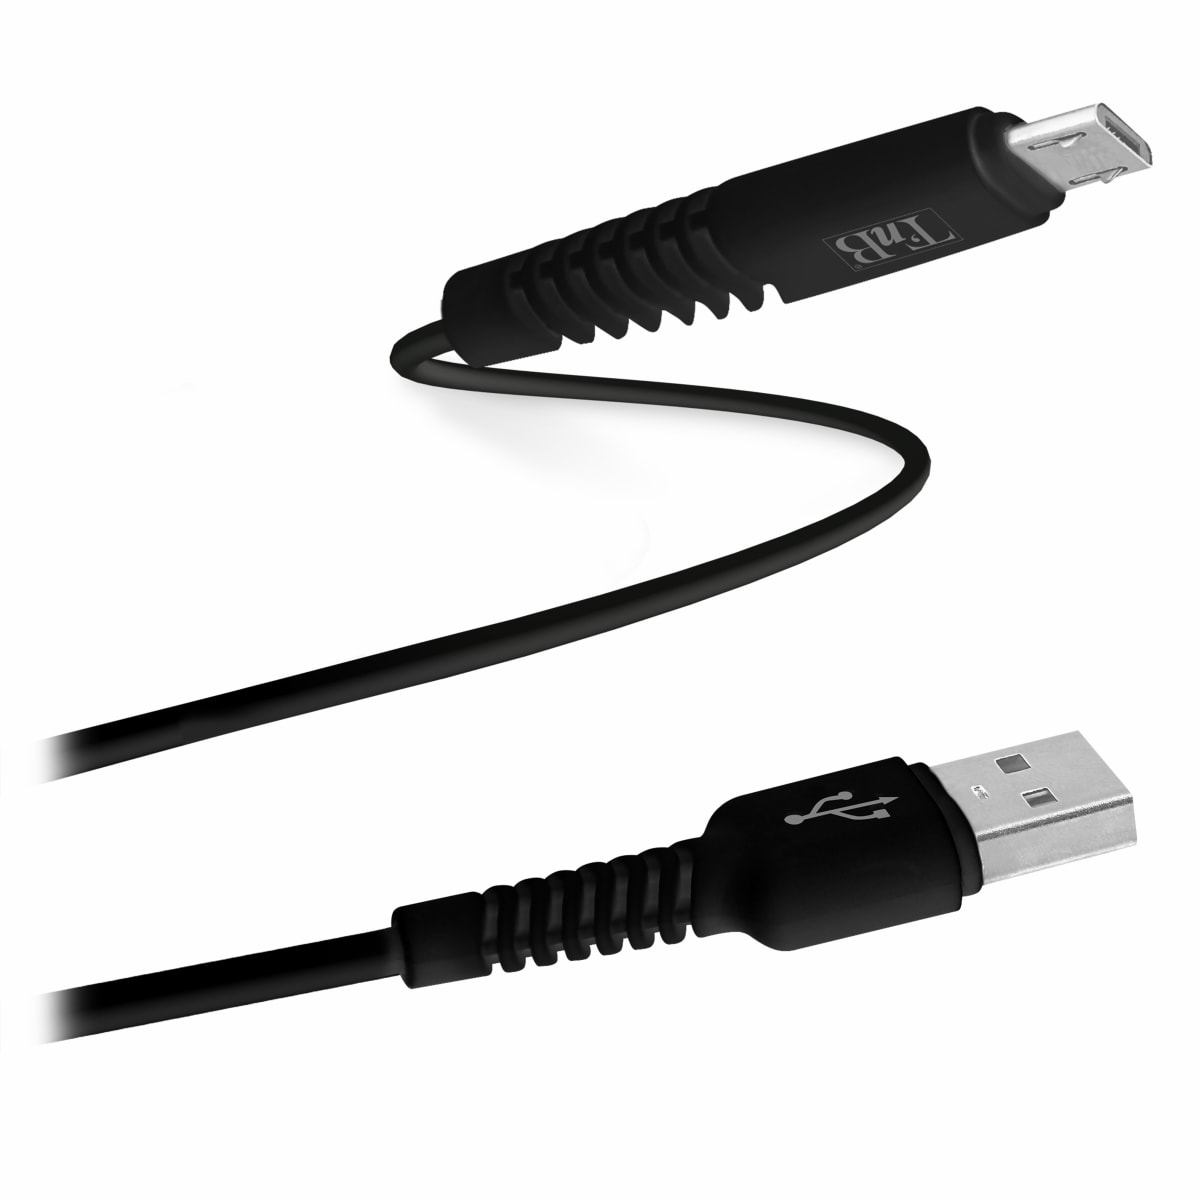 Câble Micro USB connecteurs renforcés